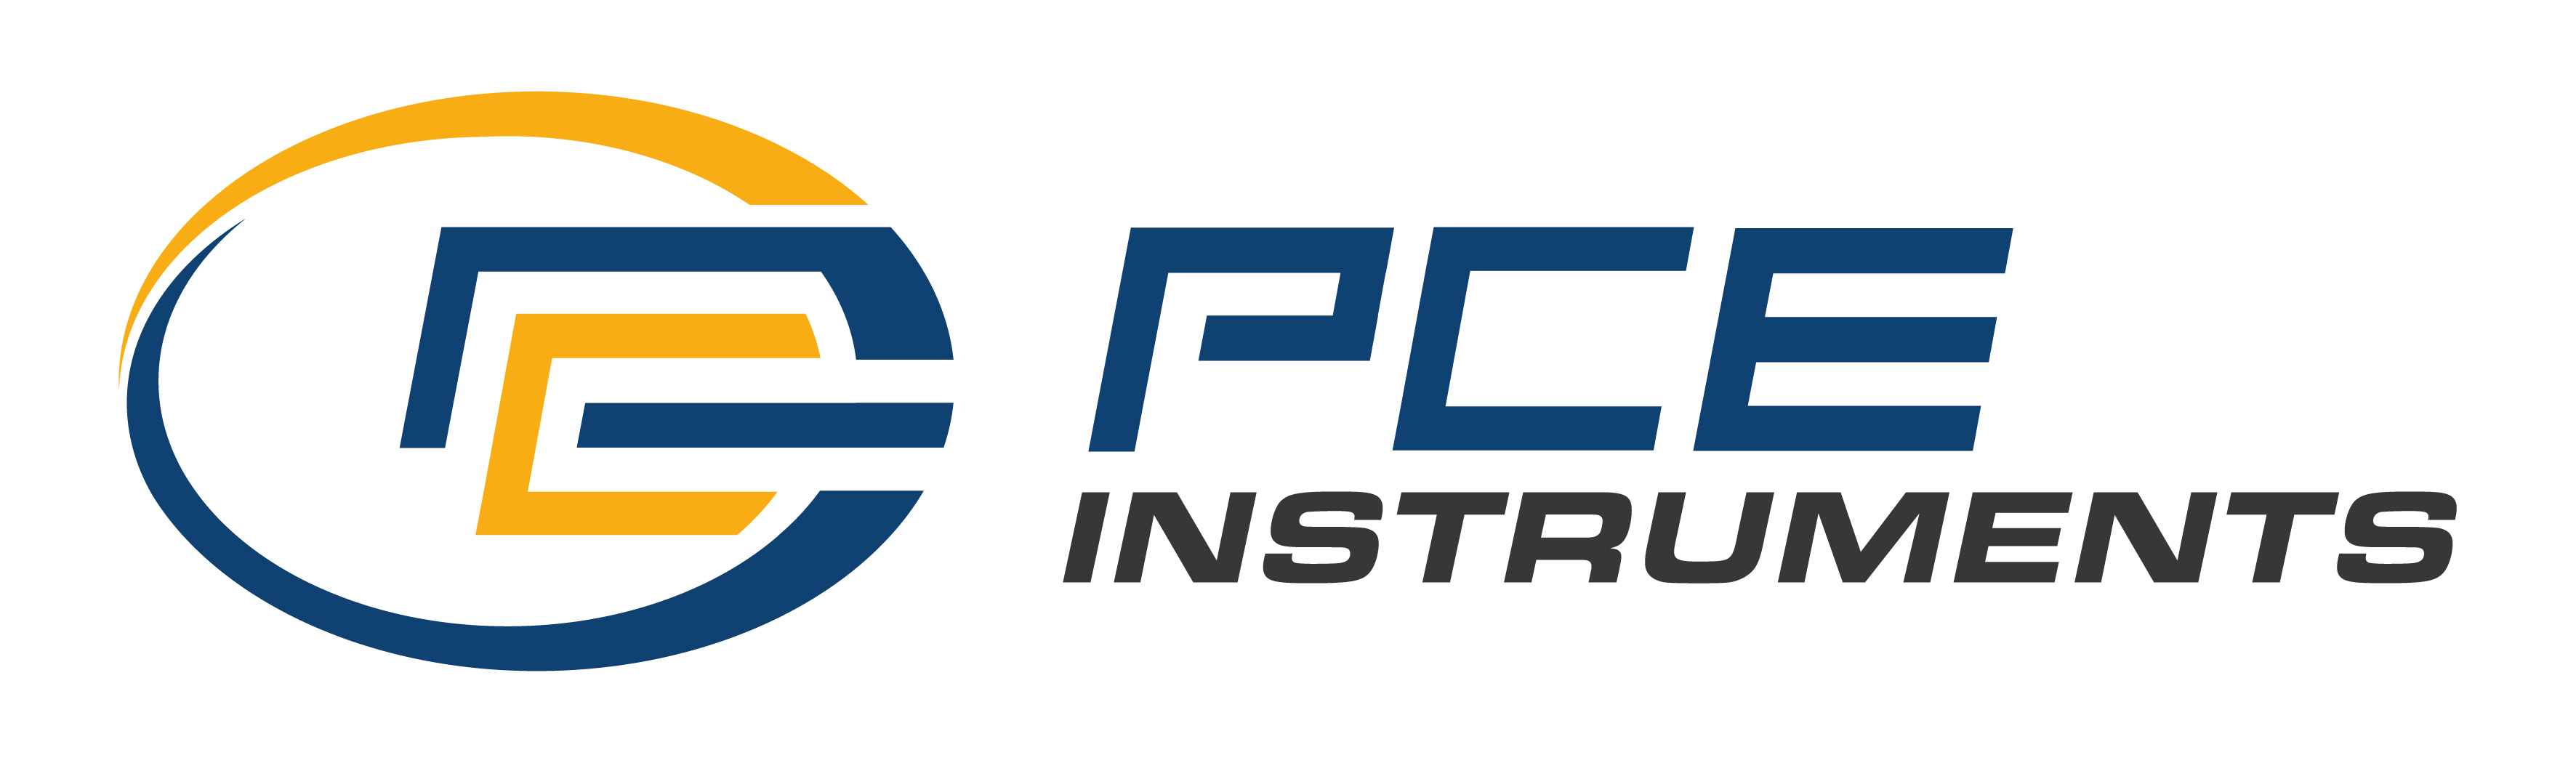 PCE Deutschland GmbH_logo